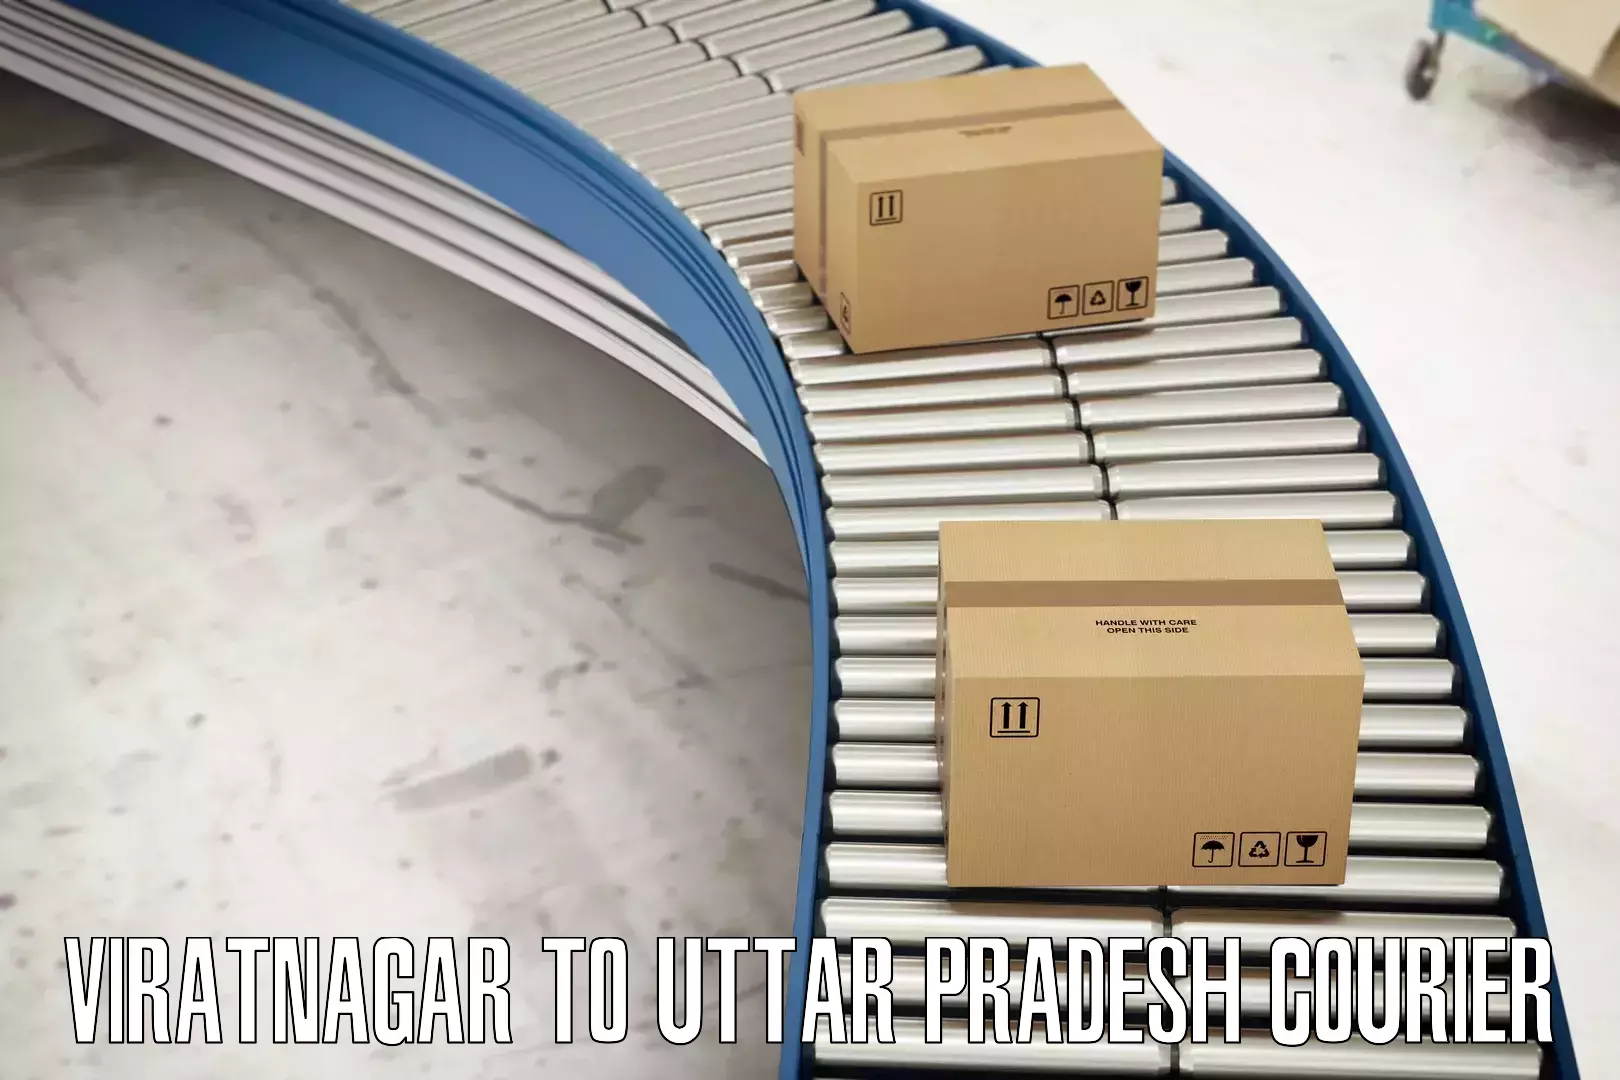 High-speed parcel service Viratnagar to Uttar Pradesh